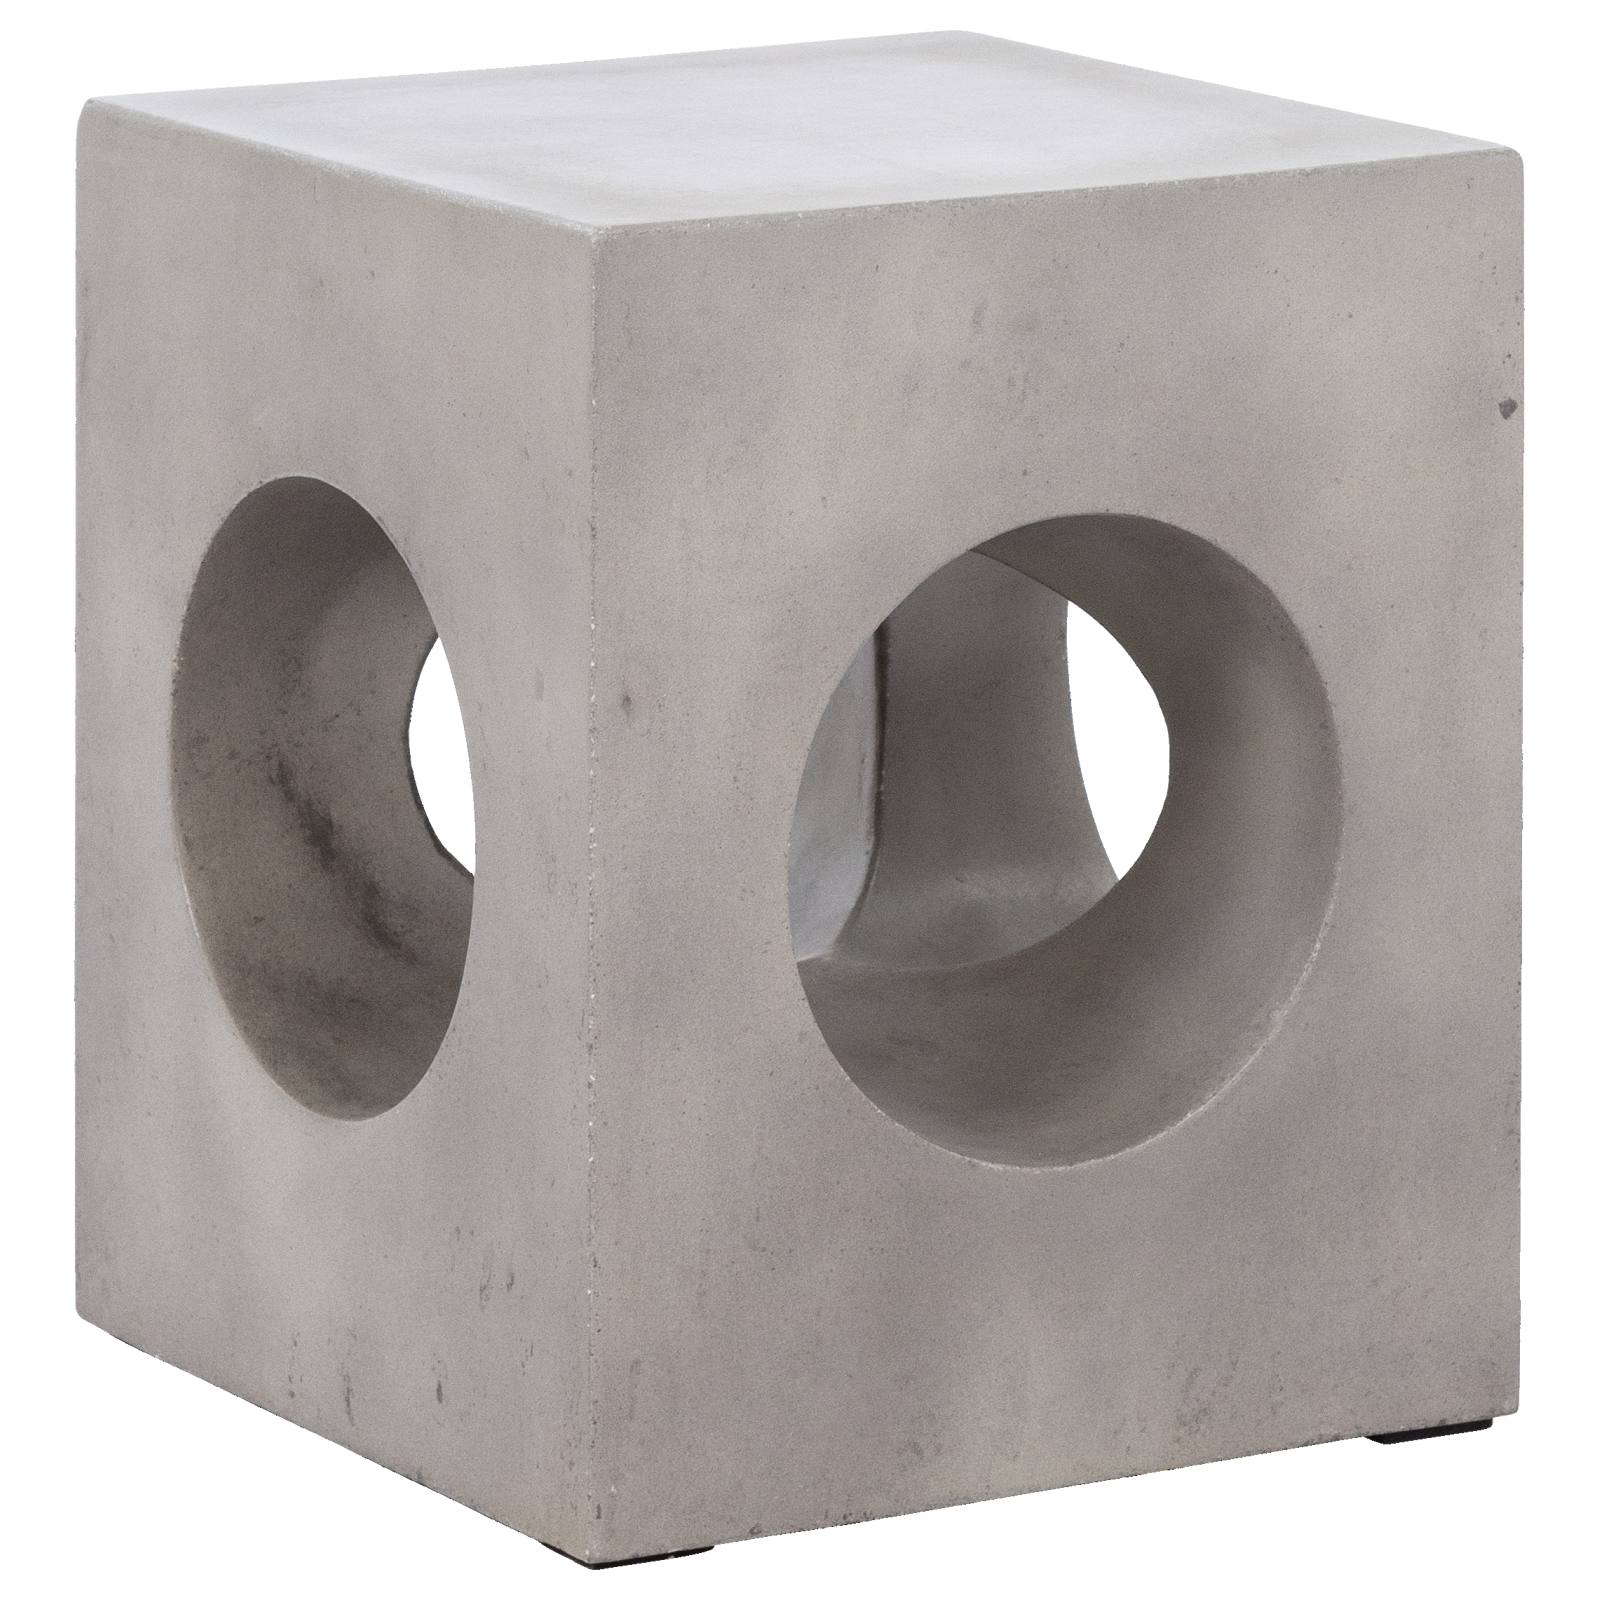 Maxi Concrete Stool, Grey